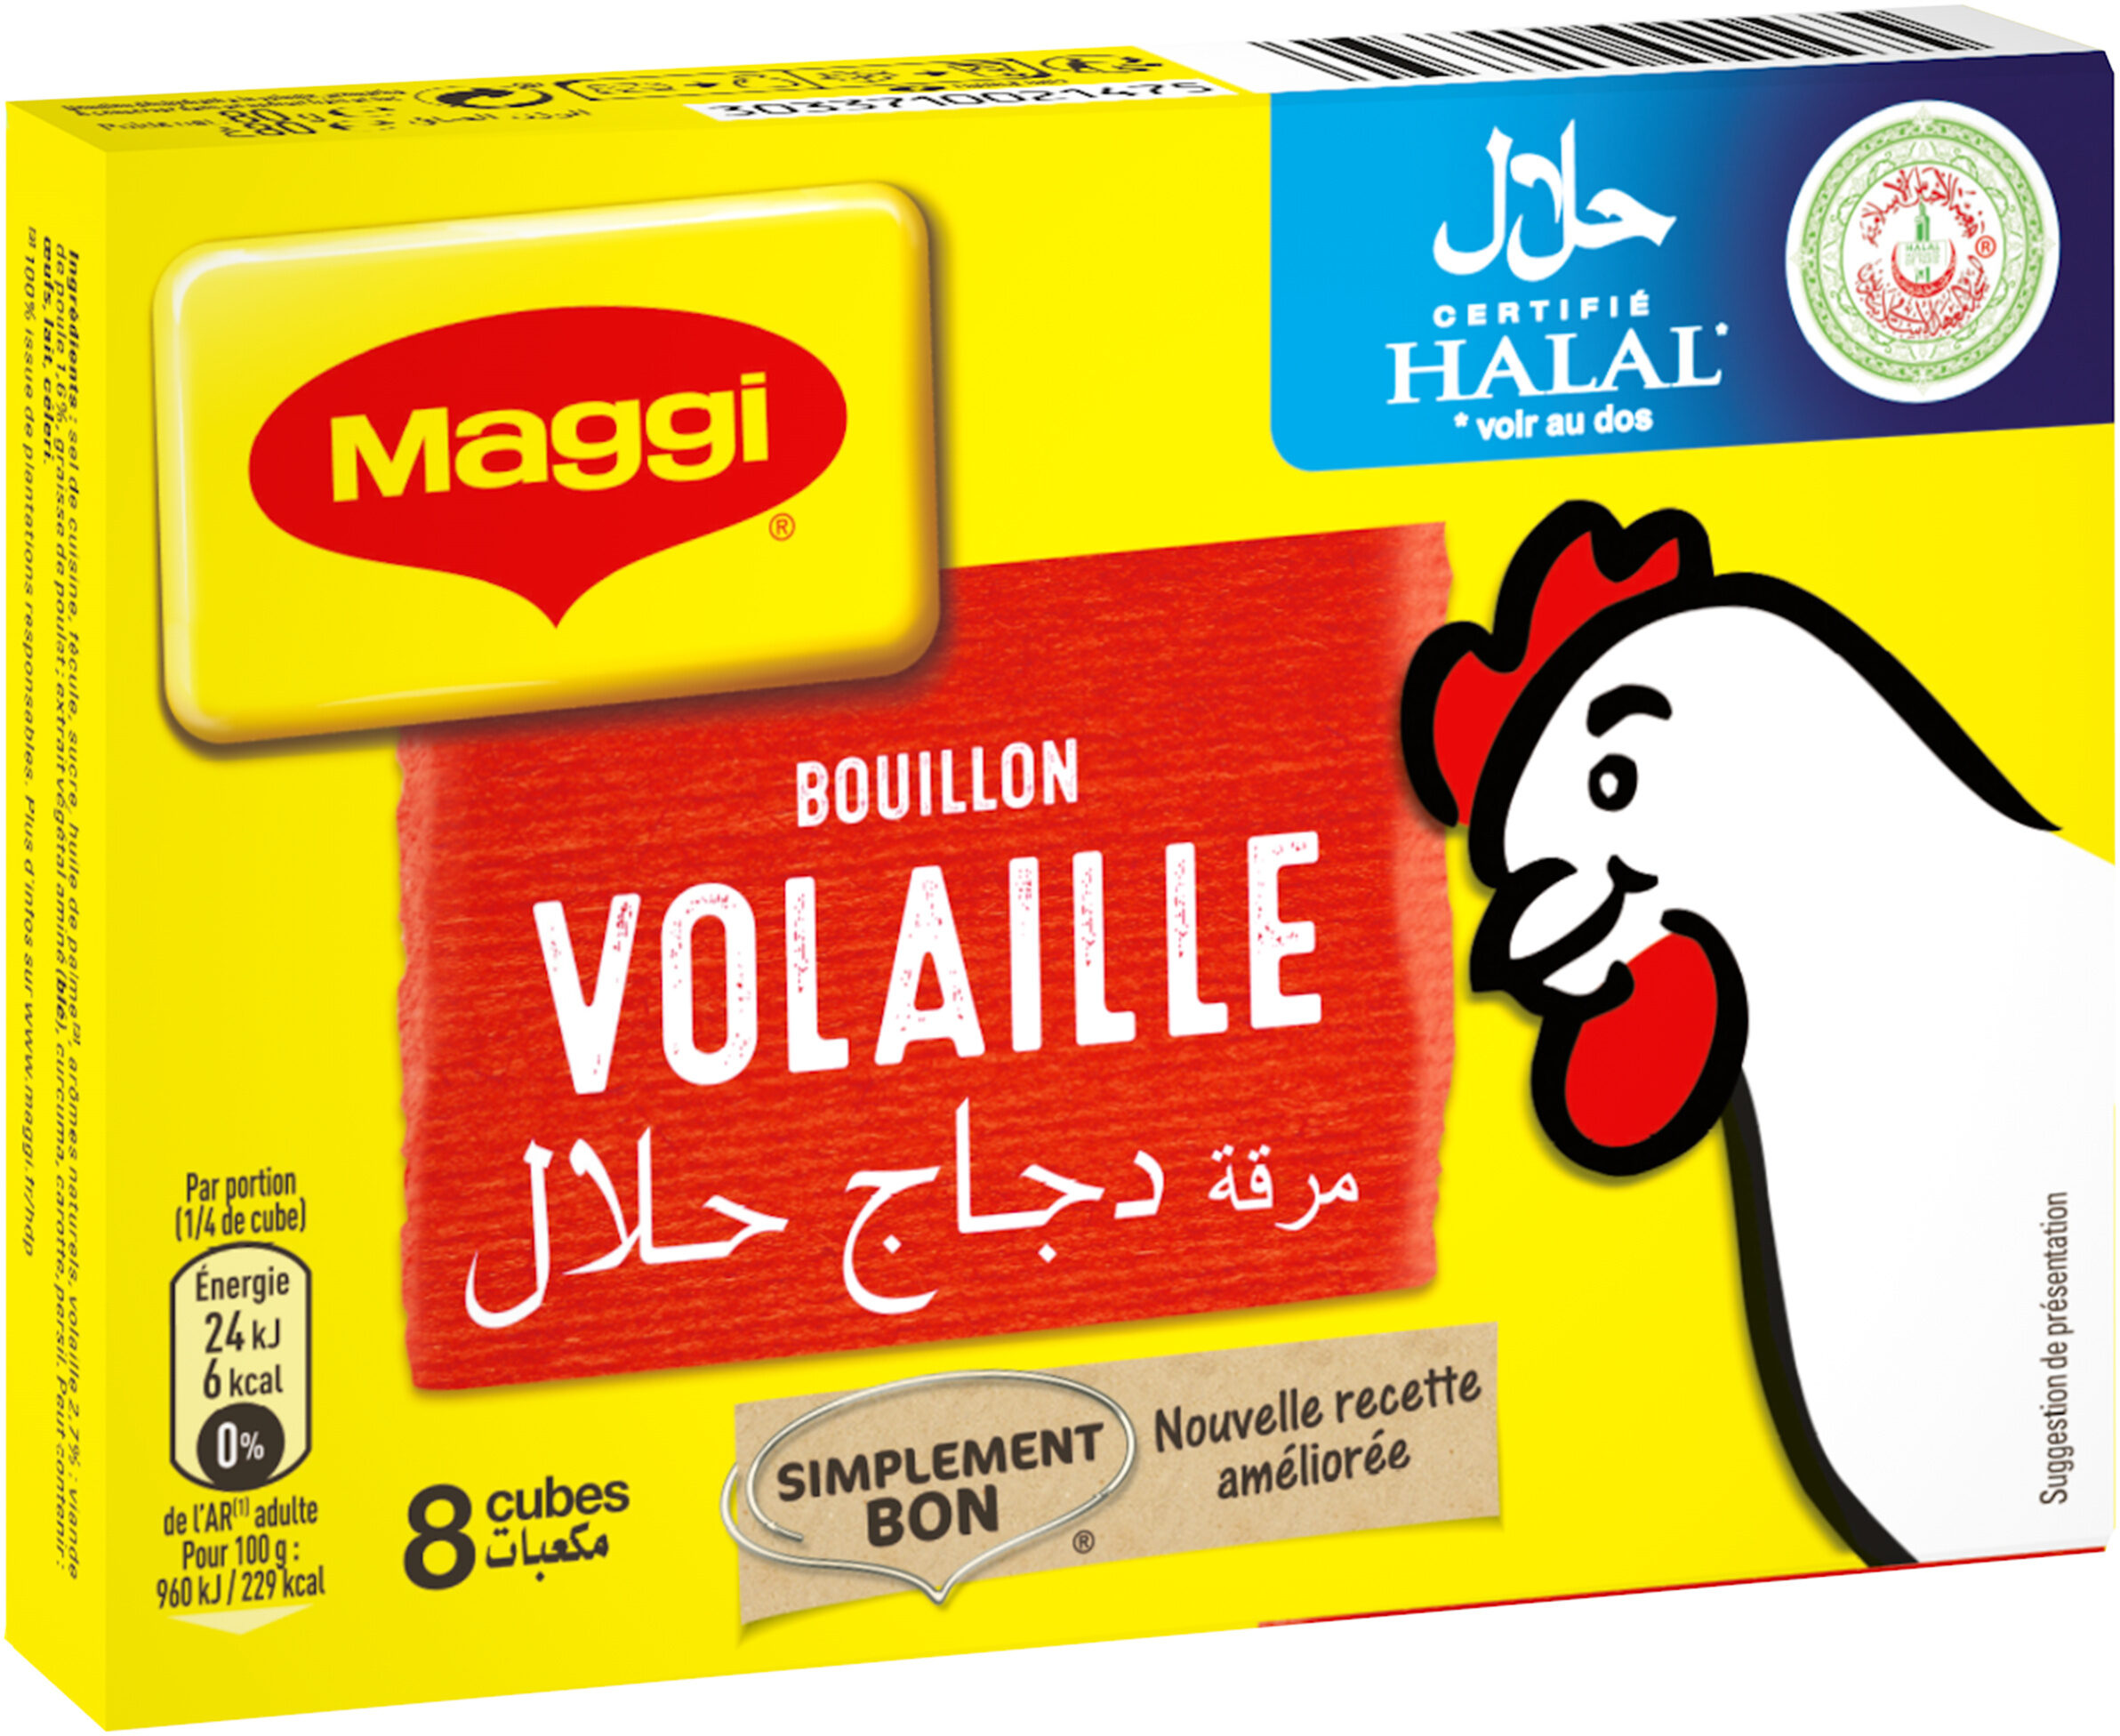 MAGGI Bouillon de Volaille Halal 8 tablettes, 80g - Produit